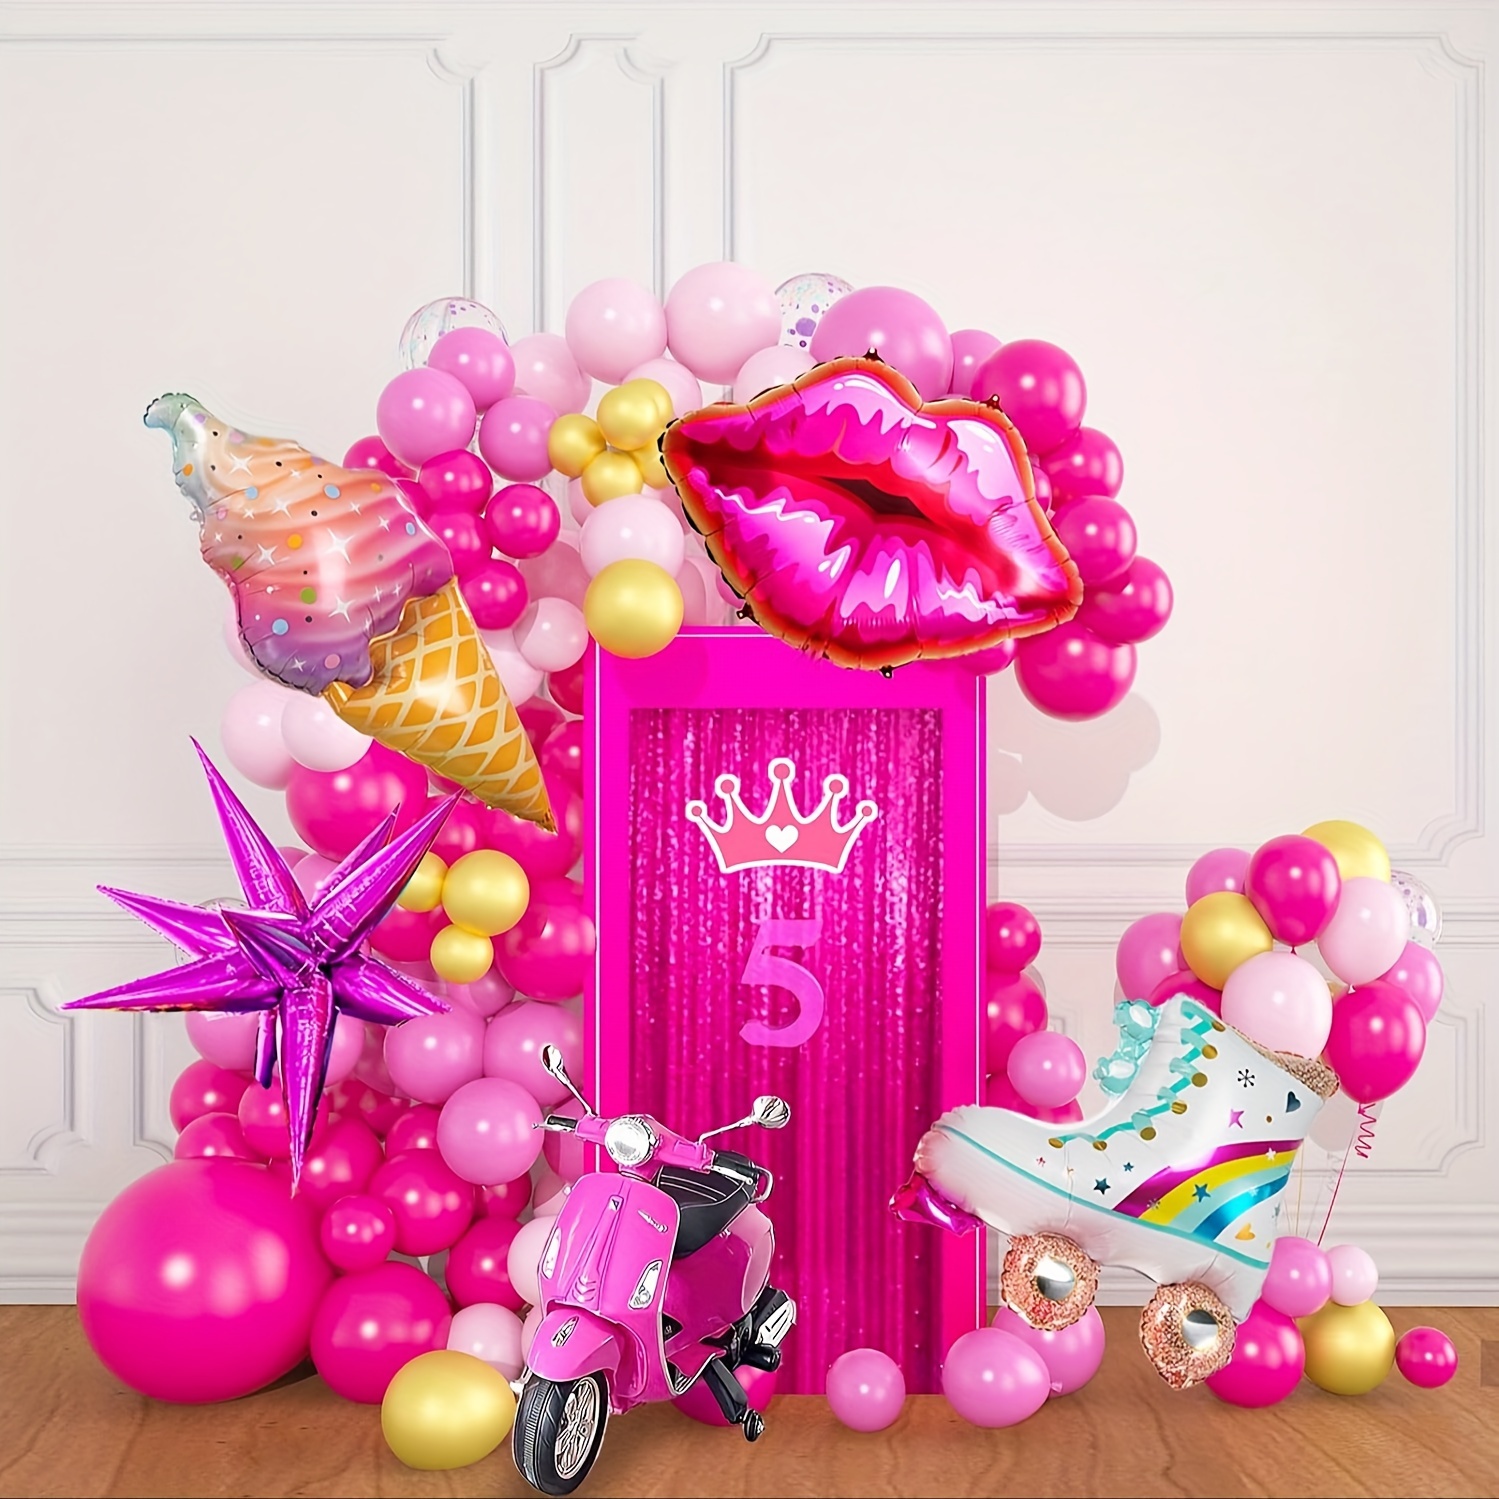 Kit de adornos y decoración de 126 guirnaldas de globos de mariposas rosas  y moradas, arco de globos con tema de mariposas y globos de lámina dorada  de mariposa estrella para niñas